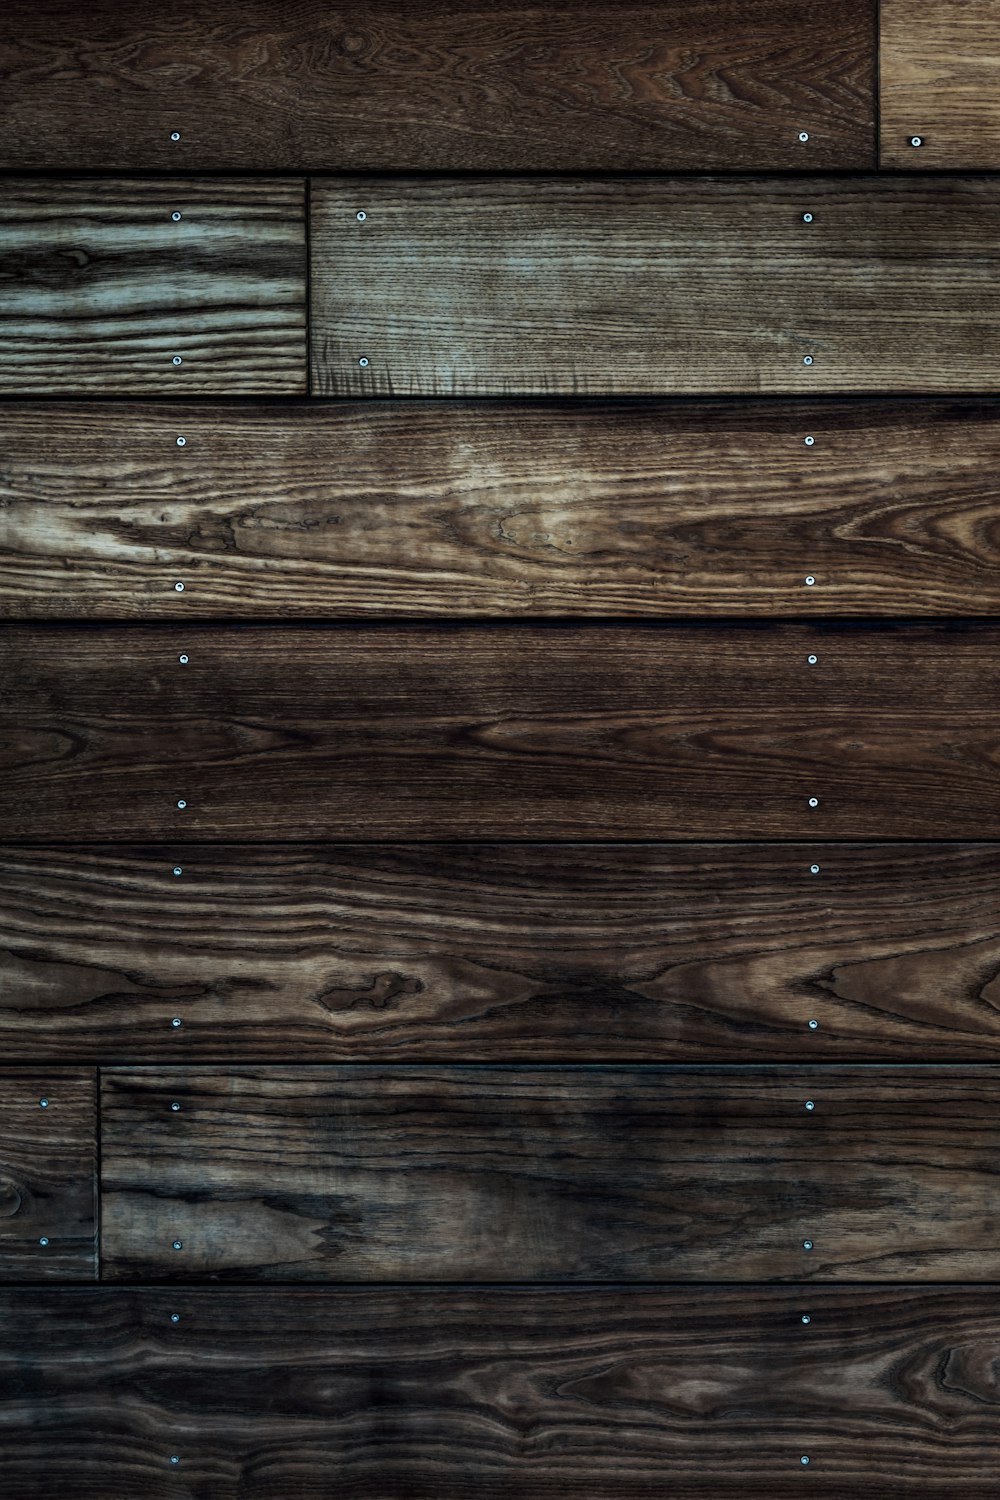 Gỗ thô: Với sự chắc chắn và độ bền cao, gỗ thô là vật liệu lý tưởng cho các món đồ nội thất hay trang trí trong nhà. Hình ảnh gỗ thô có thể mang lại cho bạn cảm giác thư giãn và yên bình bởi vẻ đẹp tự nhiên của nó.